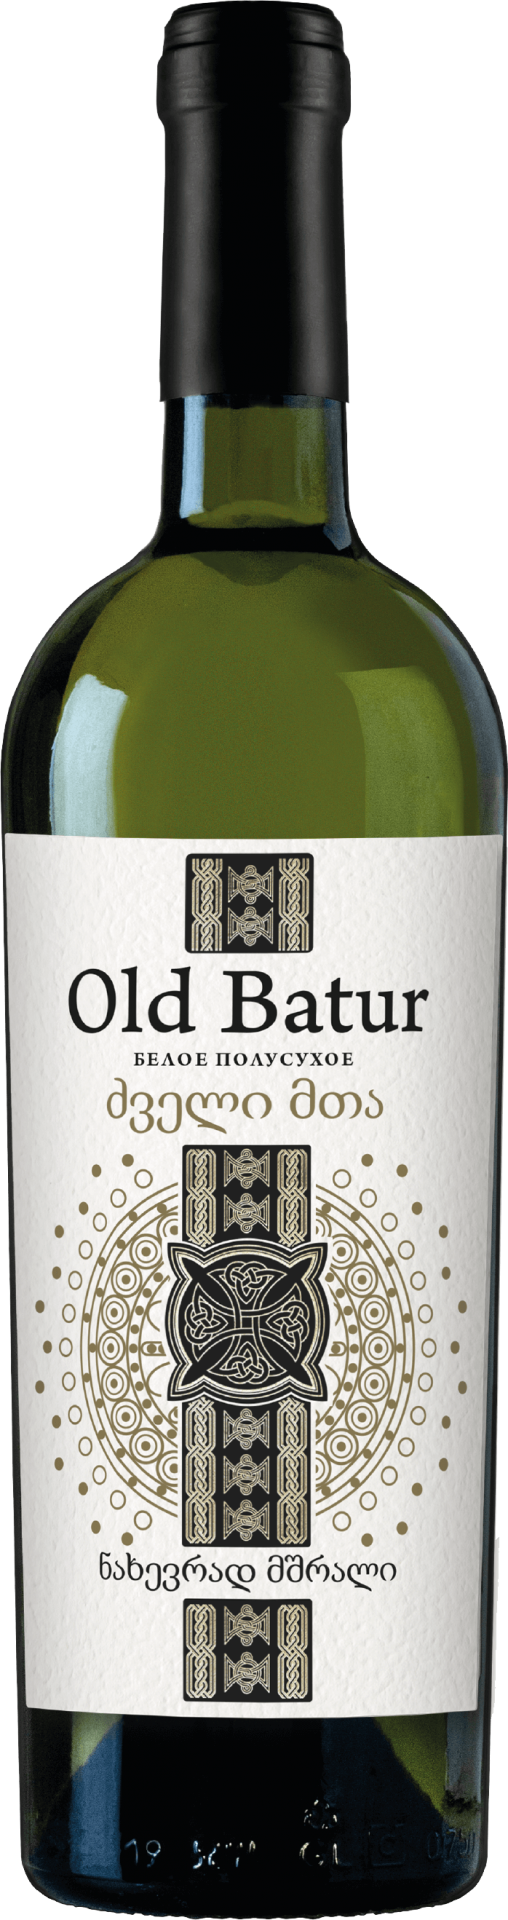 Old Batur 白葡萄酒